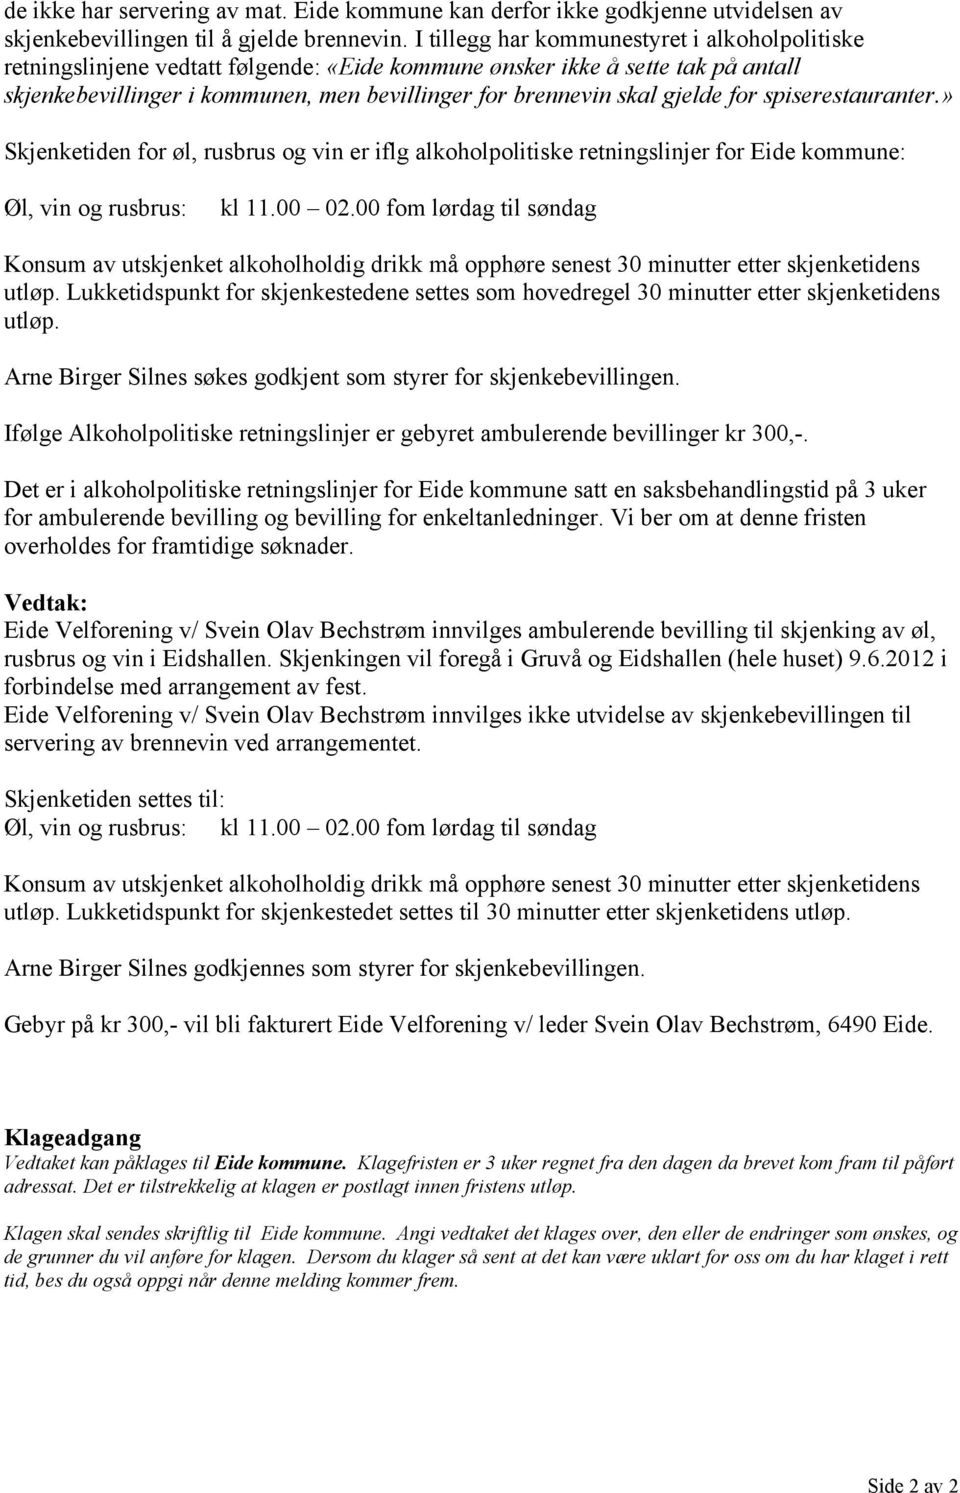 gjelde for spiserestauranter.» Skjenketiden for øl, rusbrus og vin er iflg alkoholpolitiske retningslinjer for Eide kommune: Øl, vin og rusbrus: kl 11.00 02.